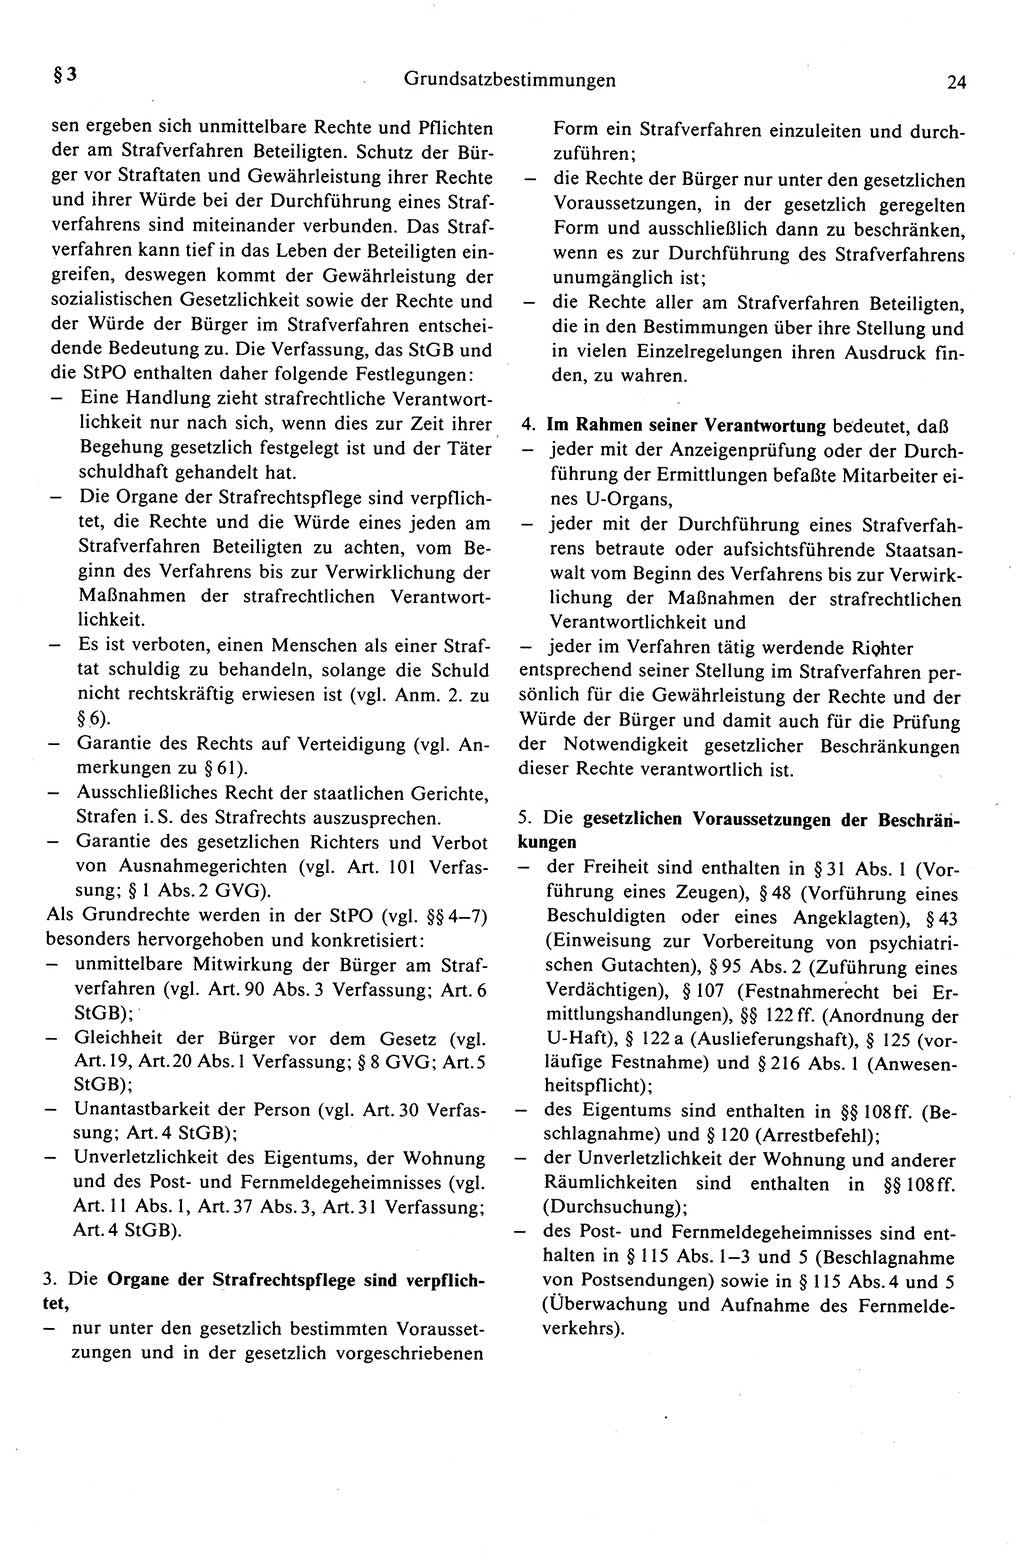 Strafprozeßrecht der DDR (Deutsche Demokratische Republik), Kommentar zur Strafprozeßordnung (StPO) 1989, Seite 24 (Strafprozeßr. DDR Komm. StPO 1989, S. 24)